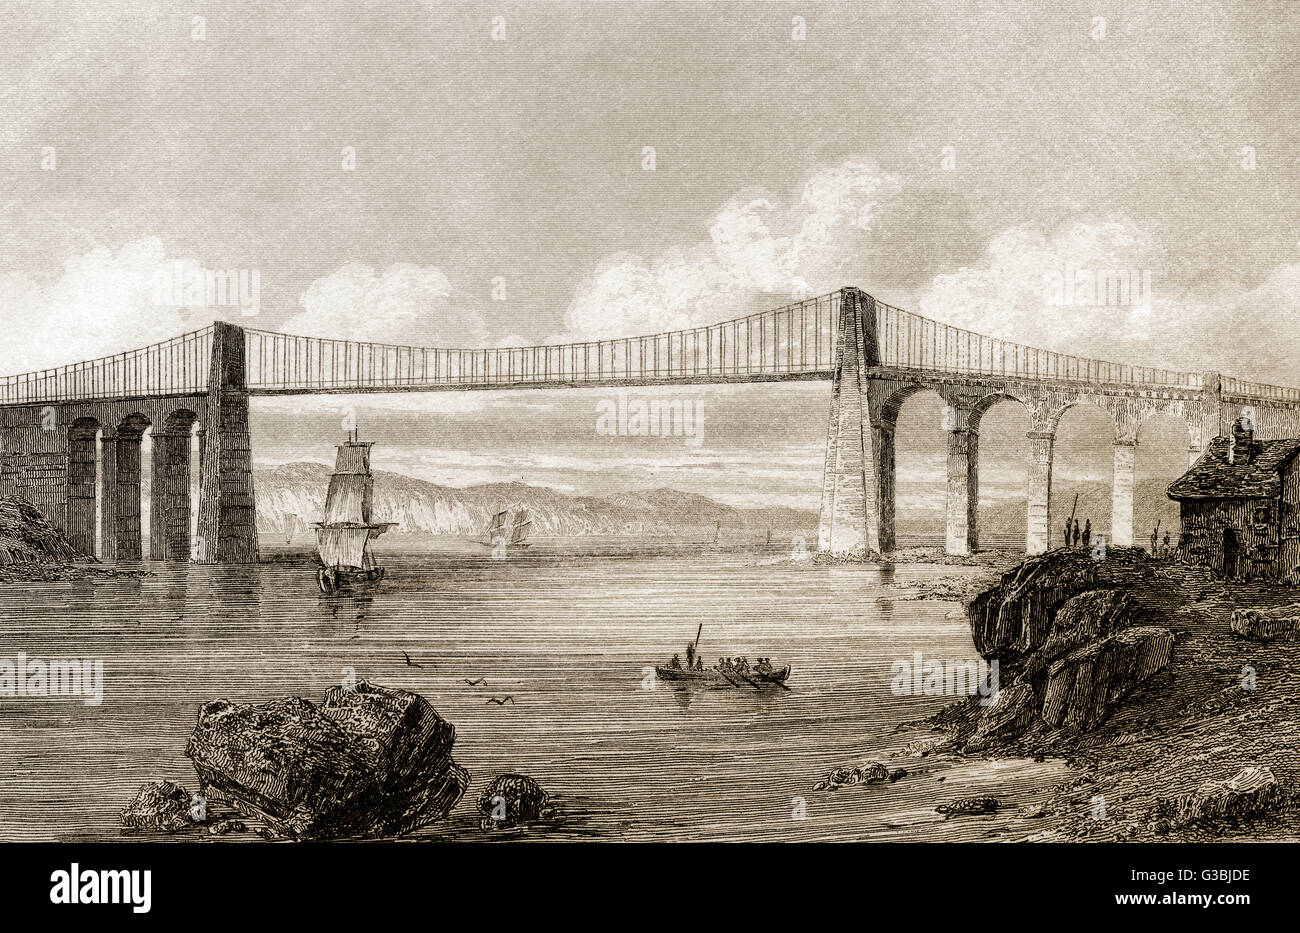 Le Pont Suspendu de Menai, Pays de Galles, Angleterre, 19e siècle Banque D'Images